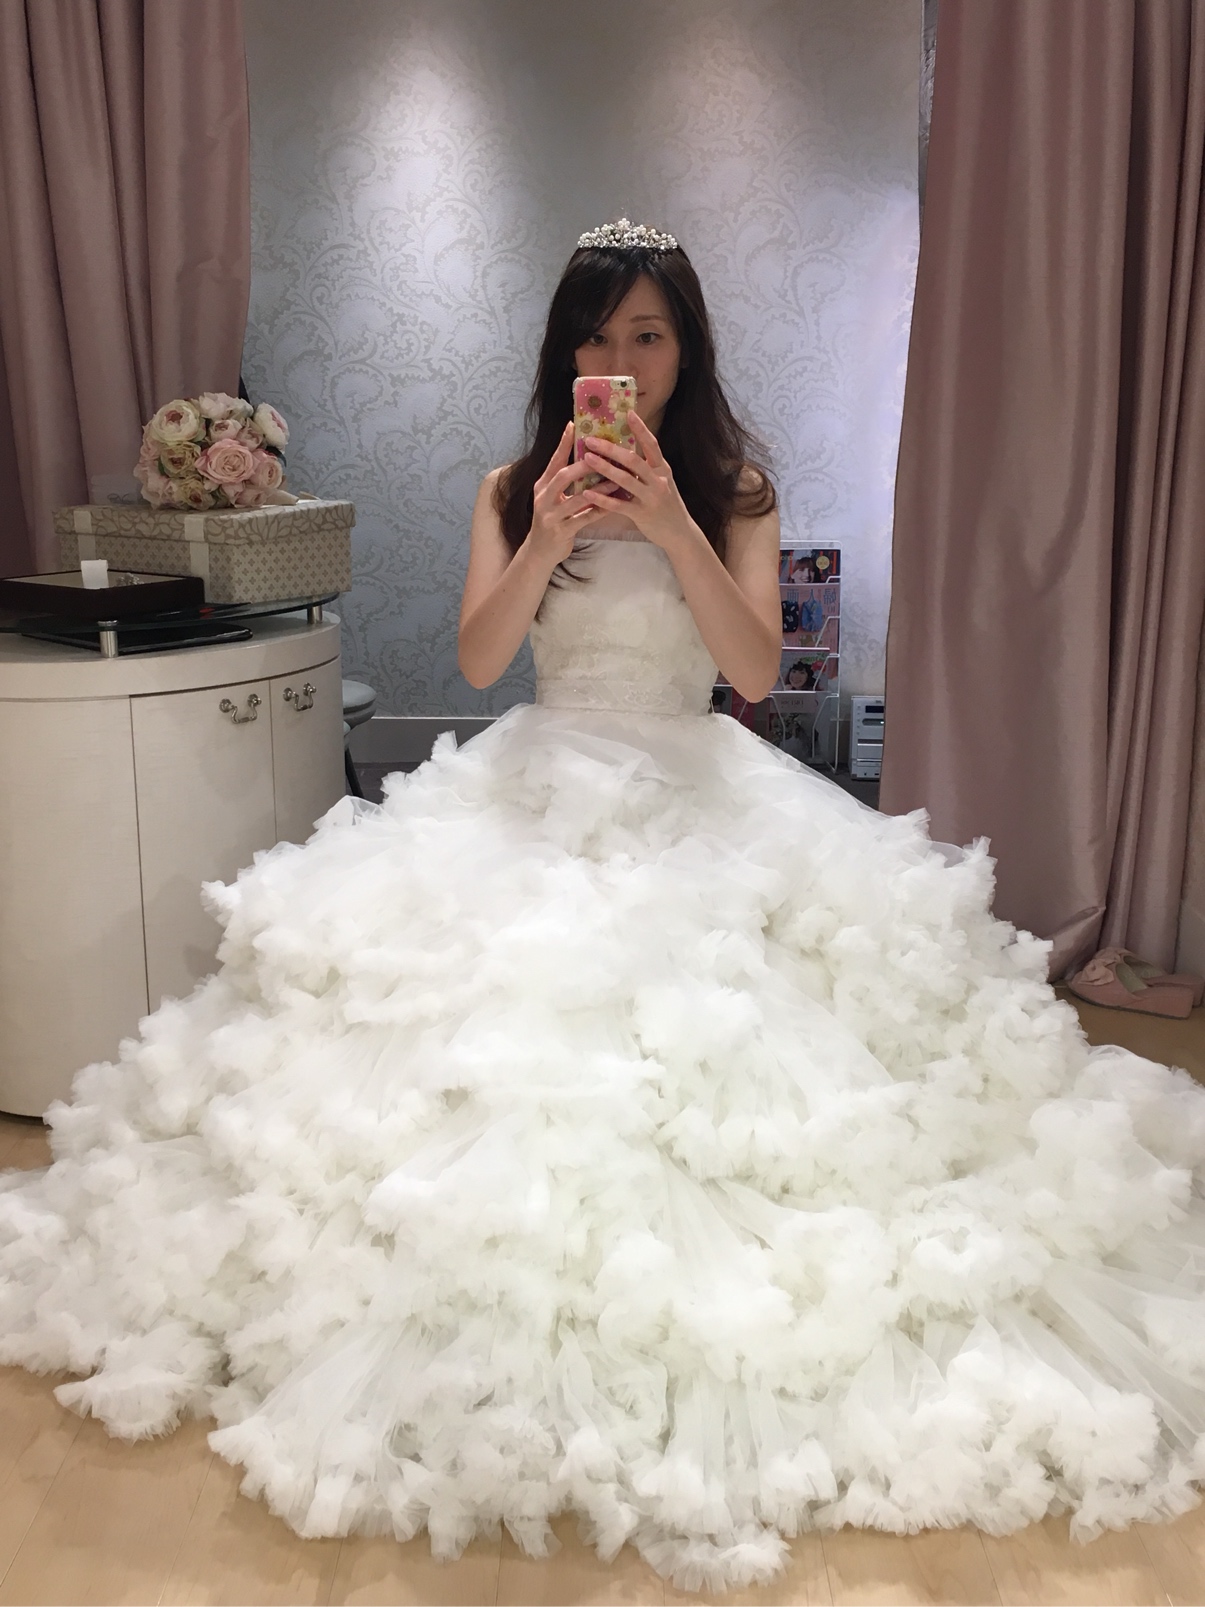 ドレス 和装の実例写真 124枚 アートグレイス ウエディングコースト 新浦安 ウェディングニュース結婚式場検索